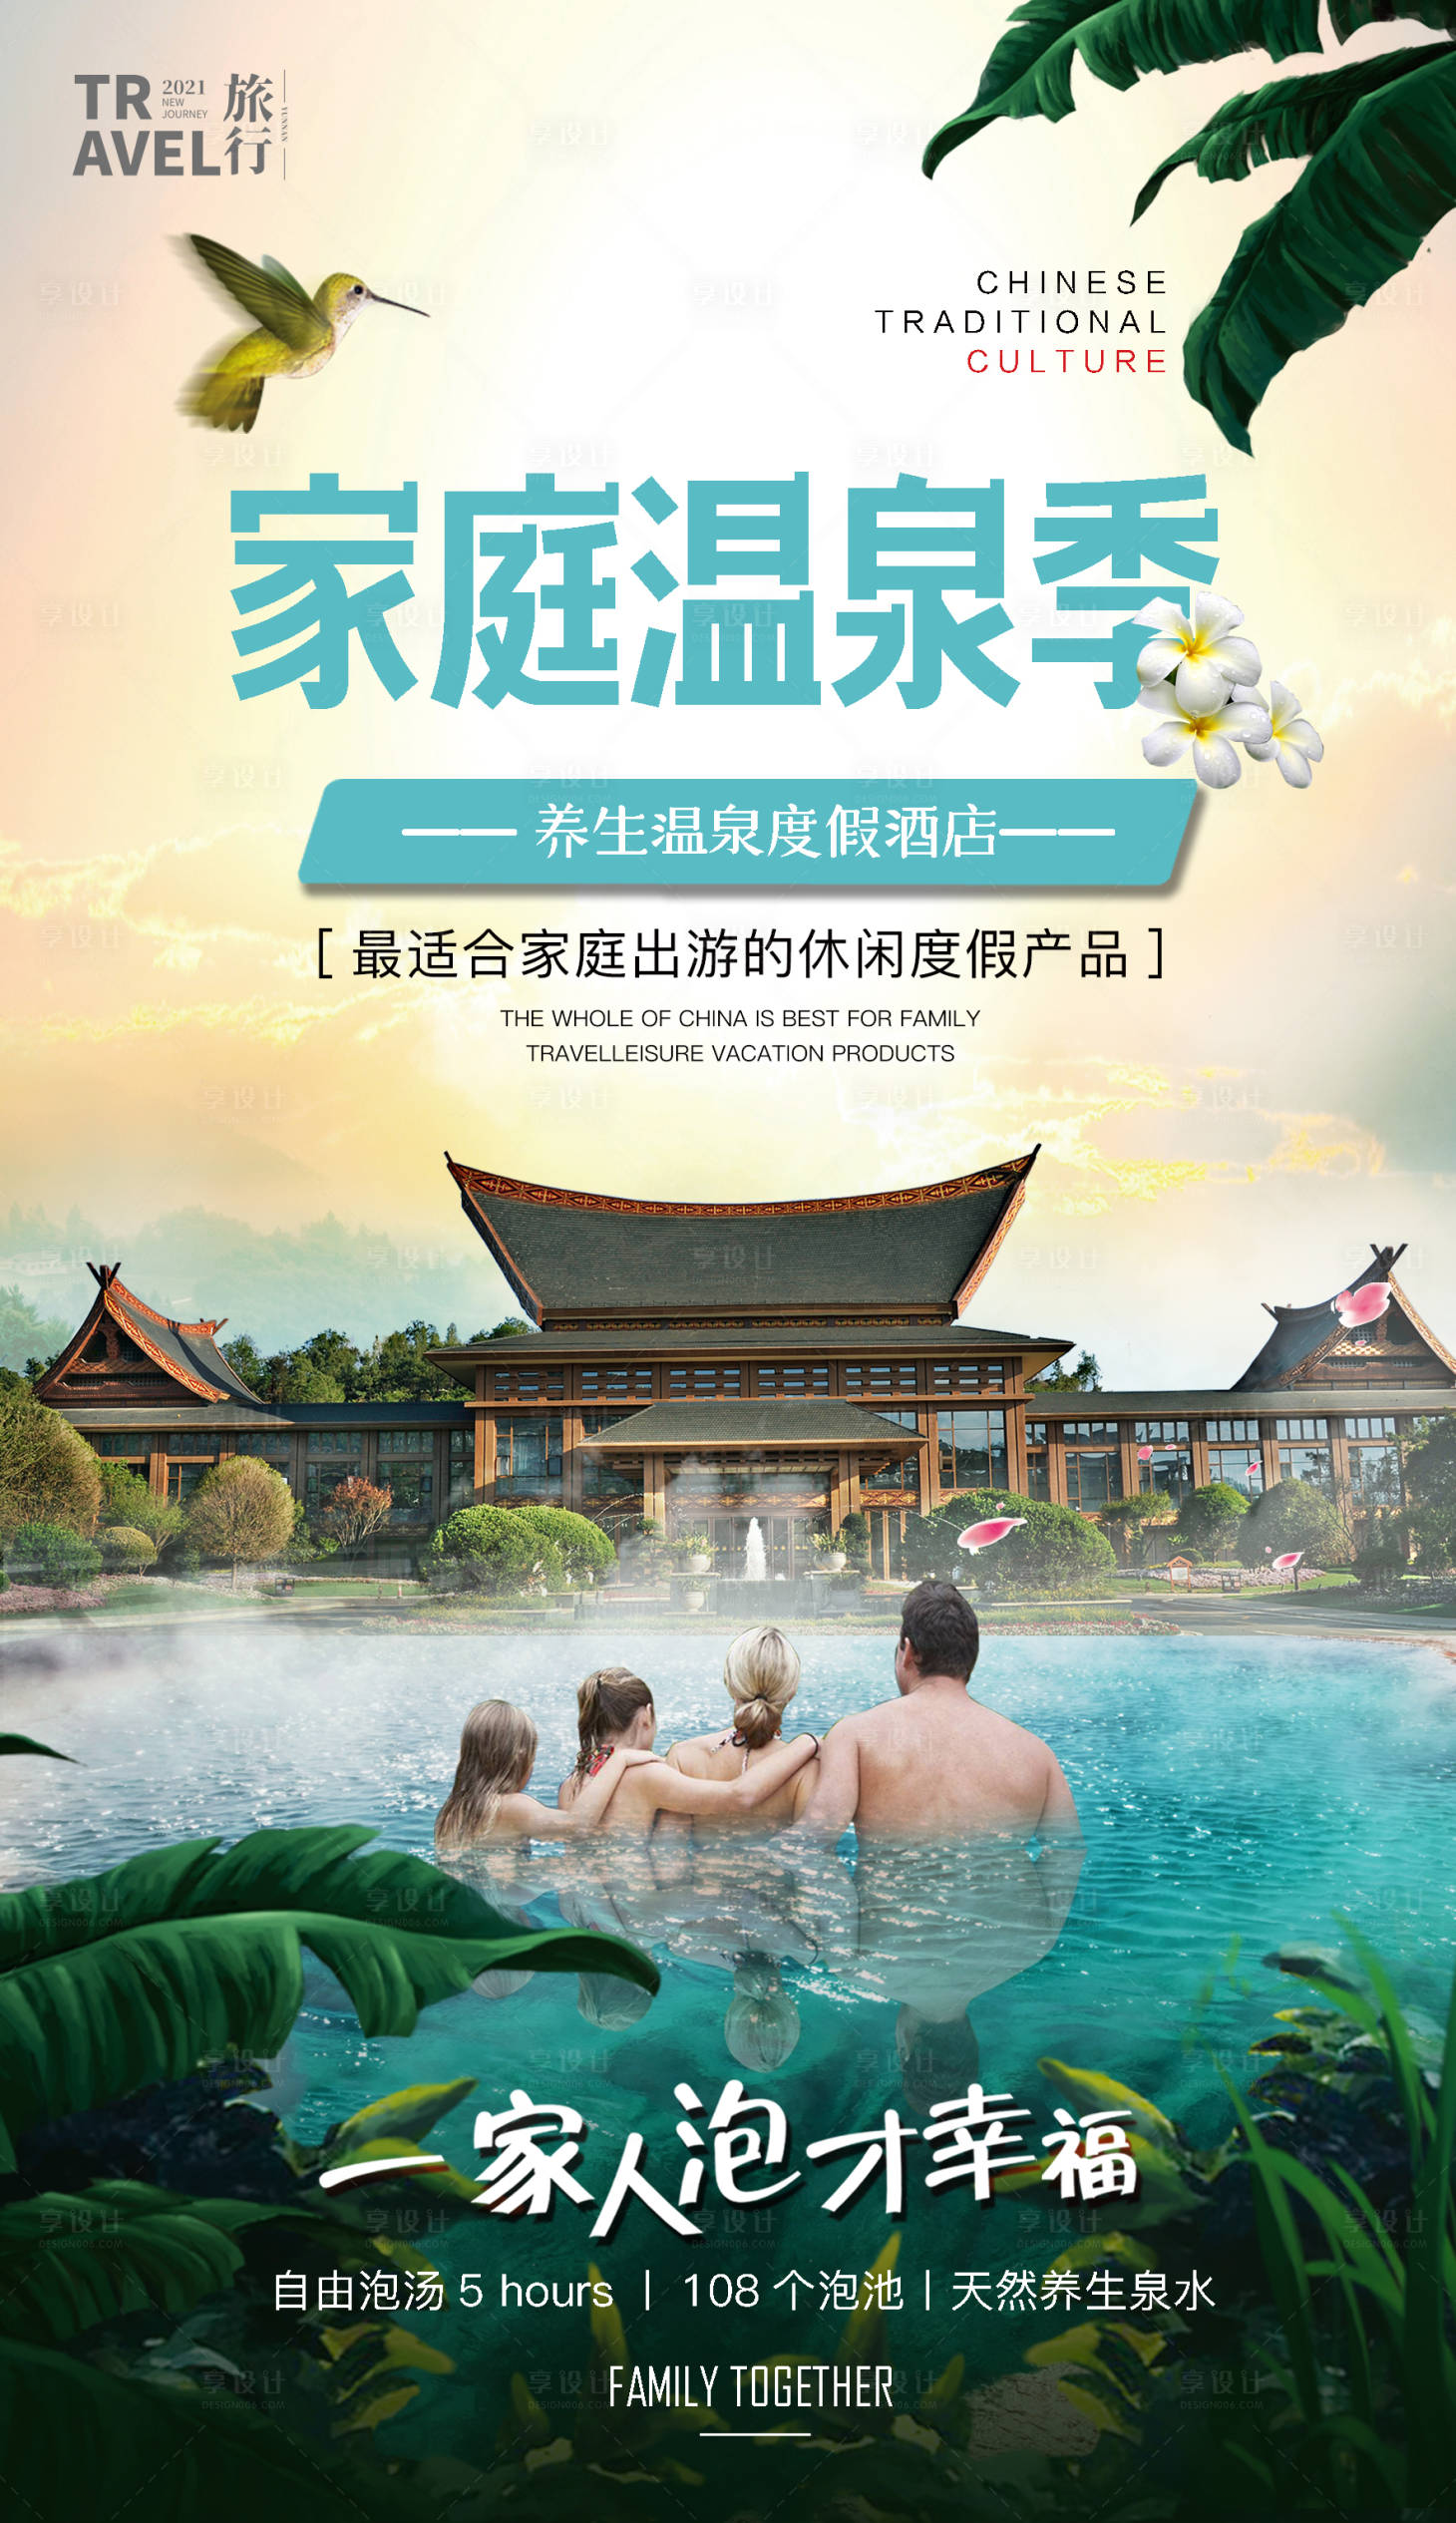 茗阳汤泉国际旅游度假会议中心-广州泊泉风景园林工程设计有限公司